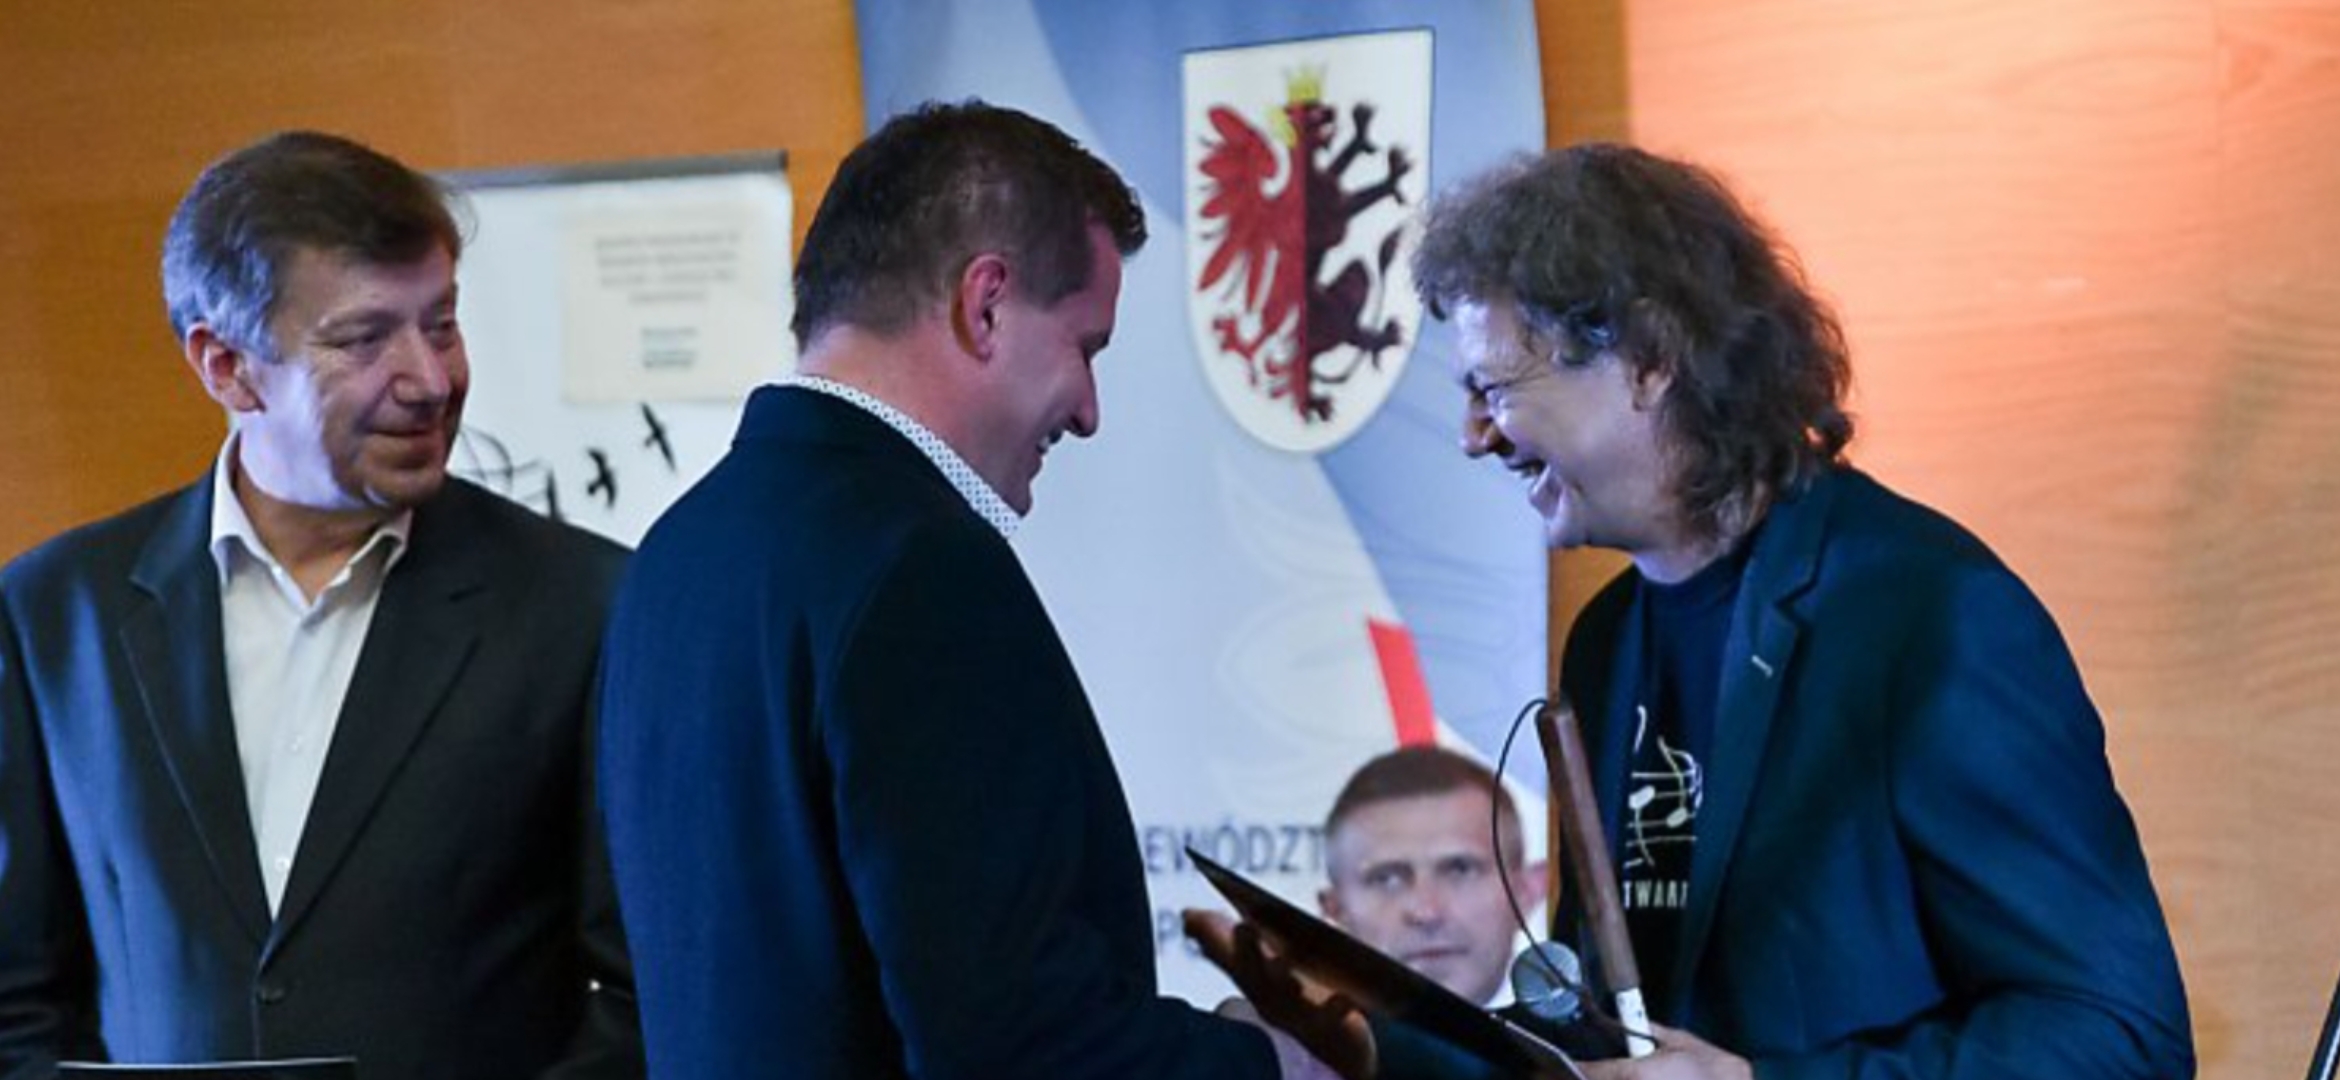 Grzegorz Dudziński (niewidomy organizator koncertów niewidzialnych) pyta: dlaczego minister cofnął dotację na XIX Festiwal im. Jacka Kaczmarskiego?